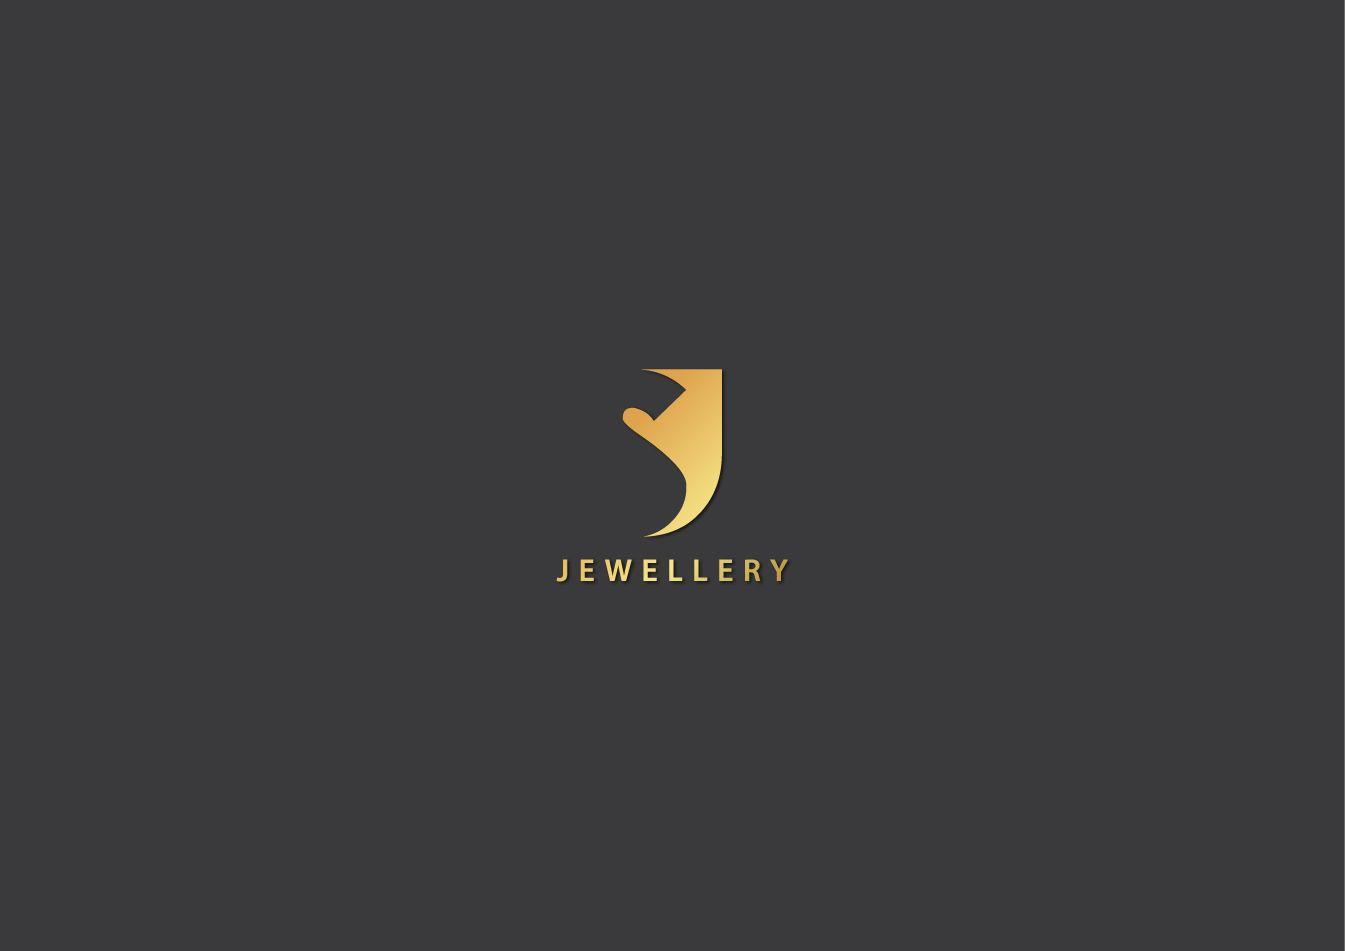 SJ Logo - Business Logo Design for SJ Jewellery by Crazy Art. Design